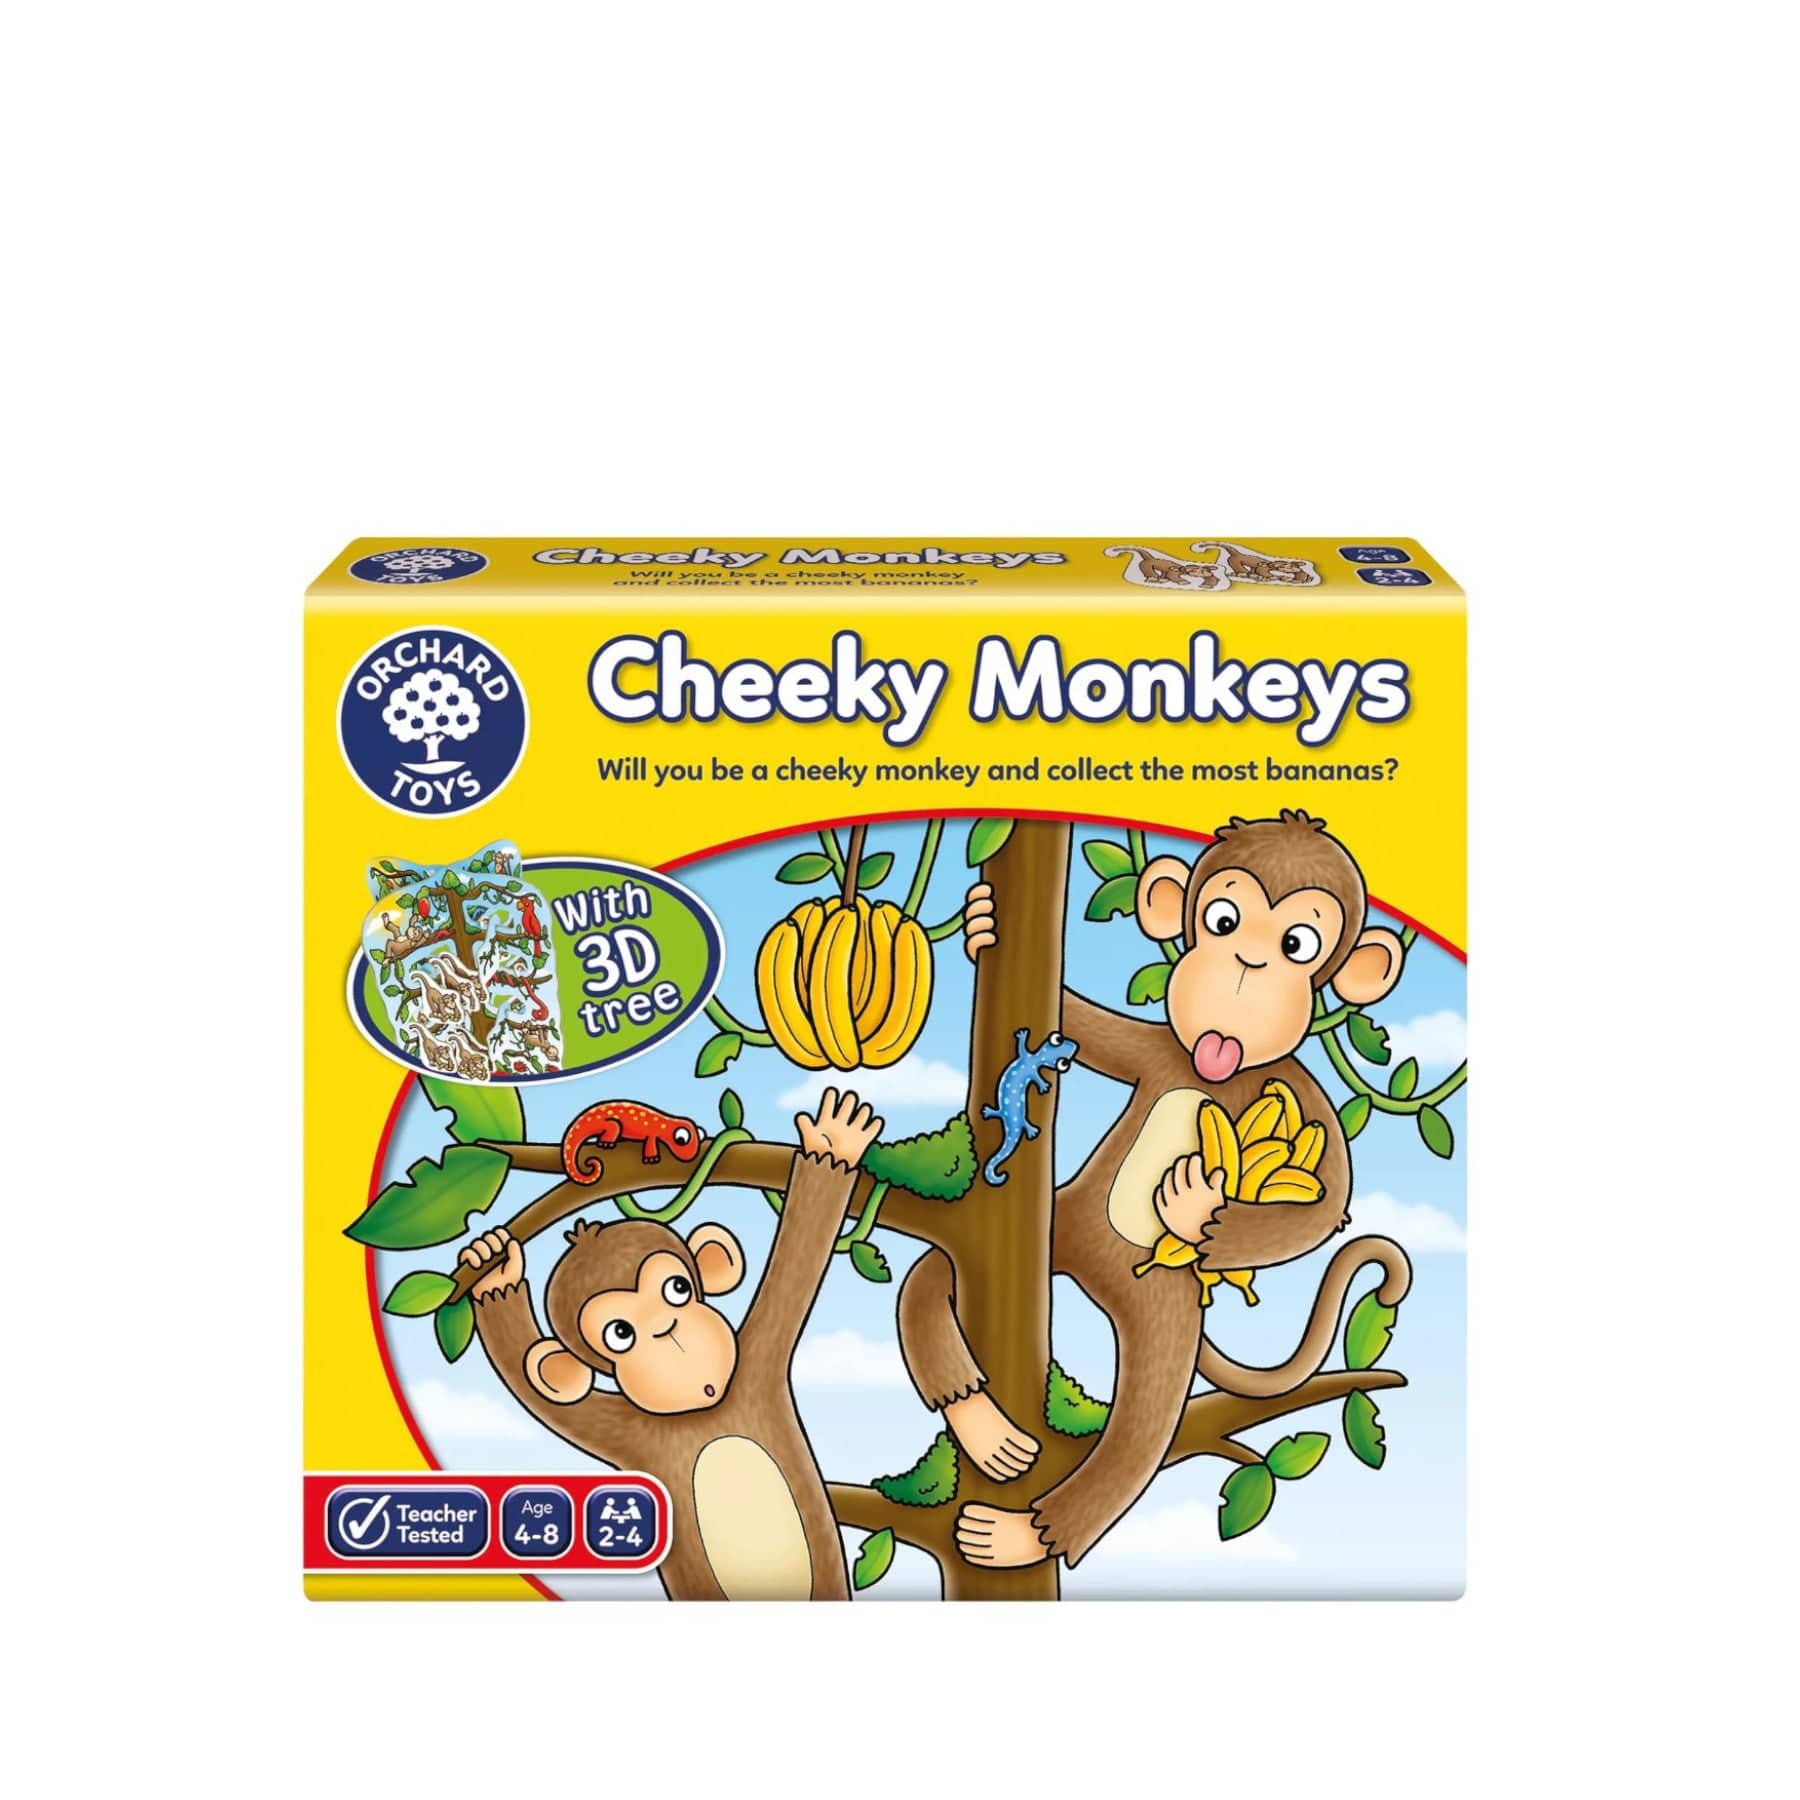 Cheeky monkeys game